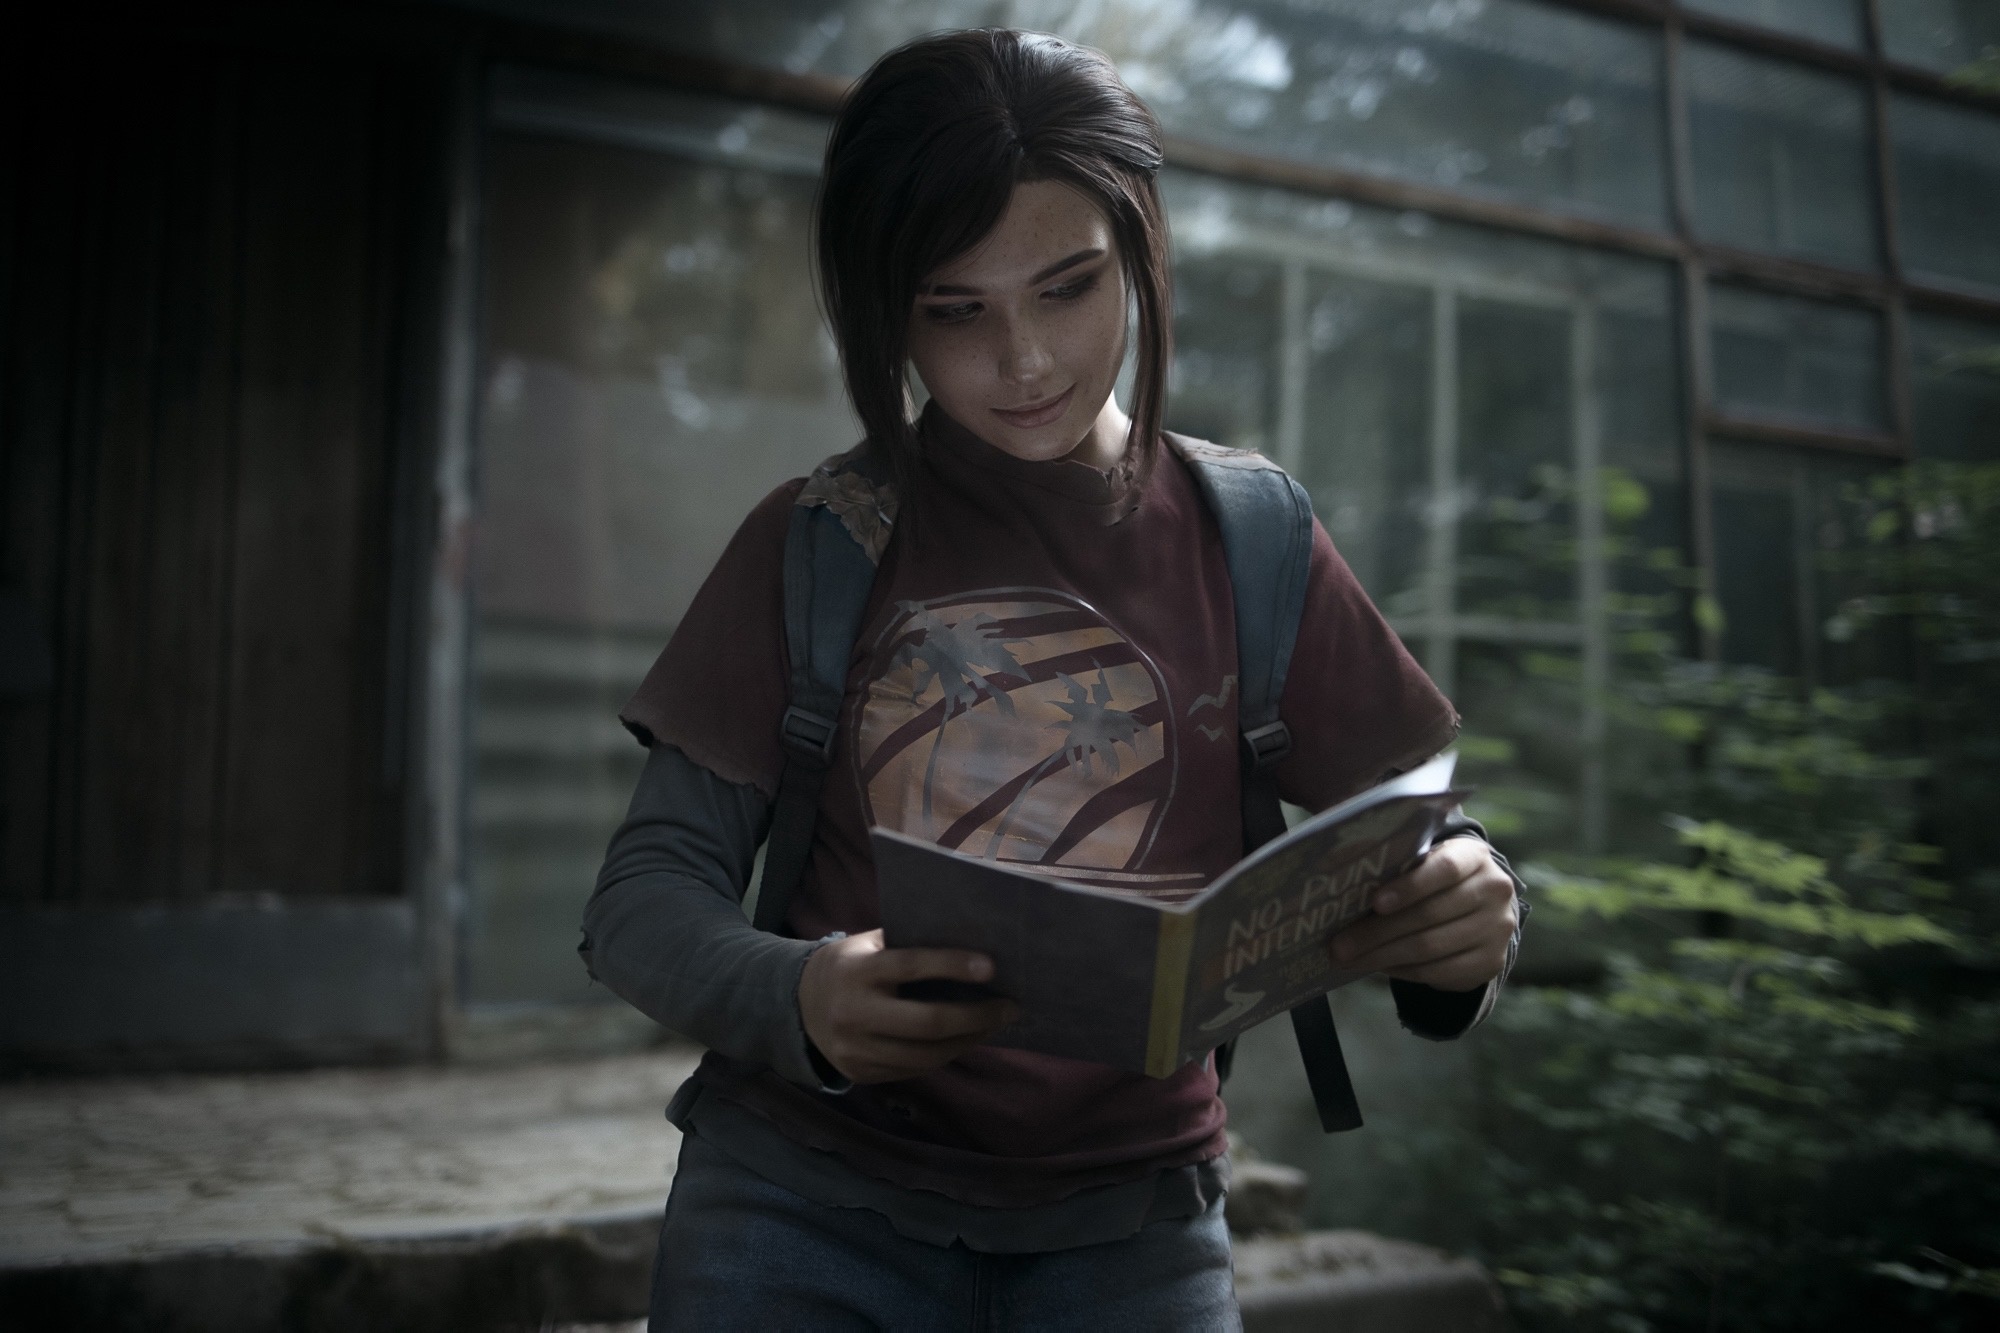 Полина Якунина, известная как mellie, предстала в образе Элли из The Last of Us